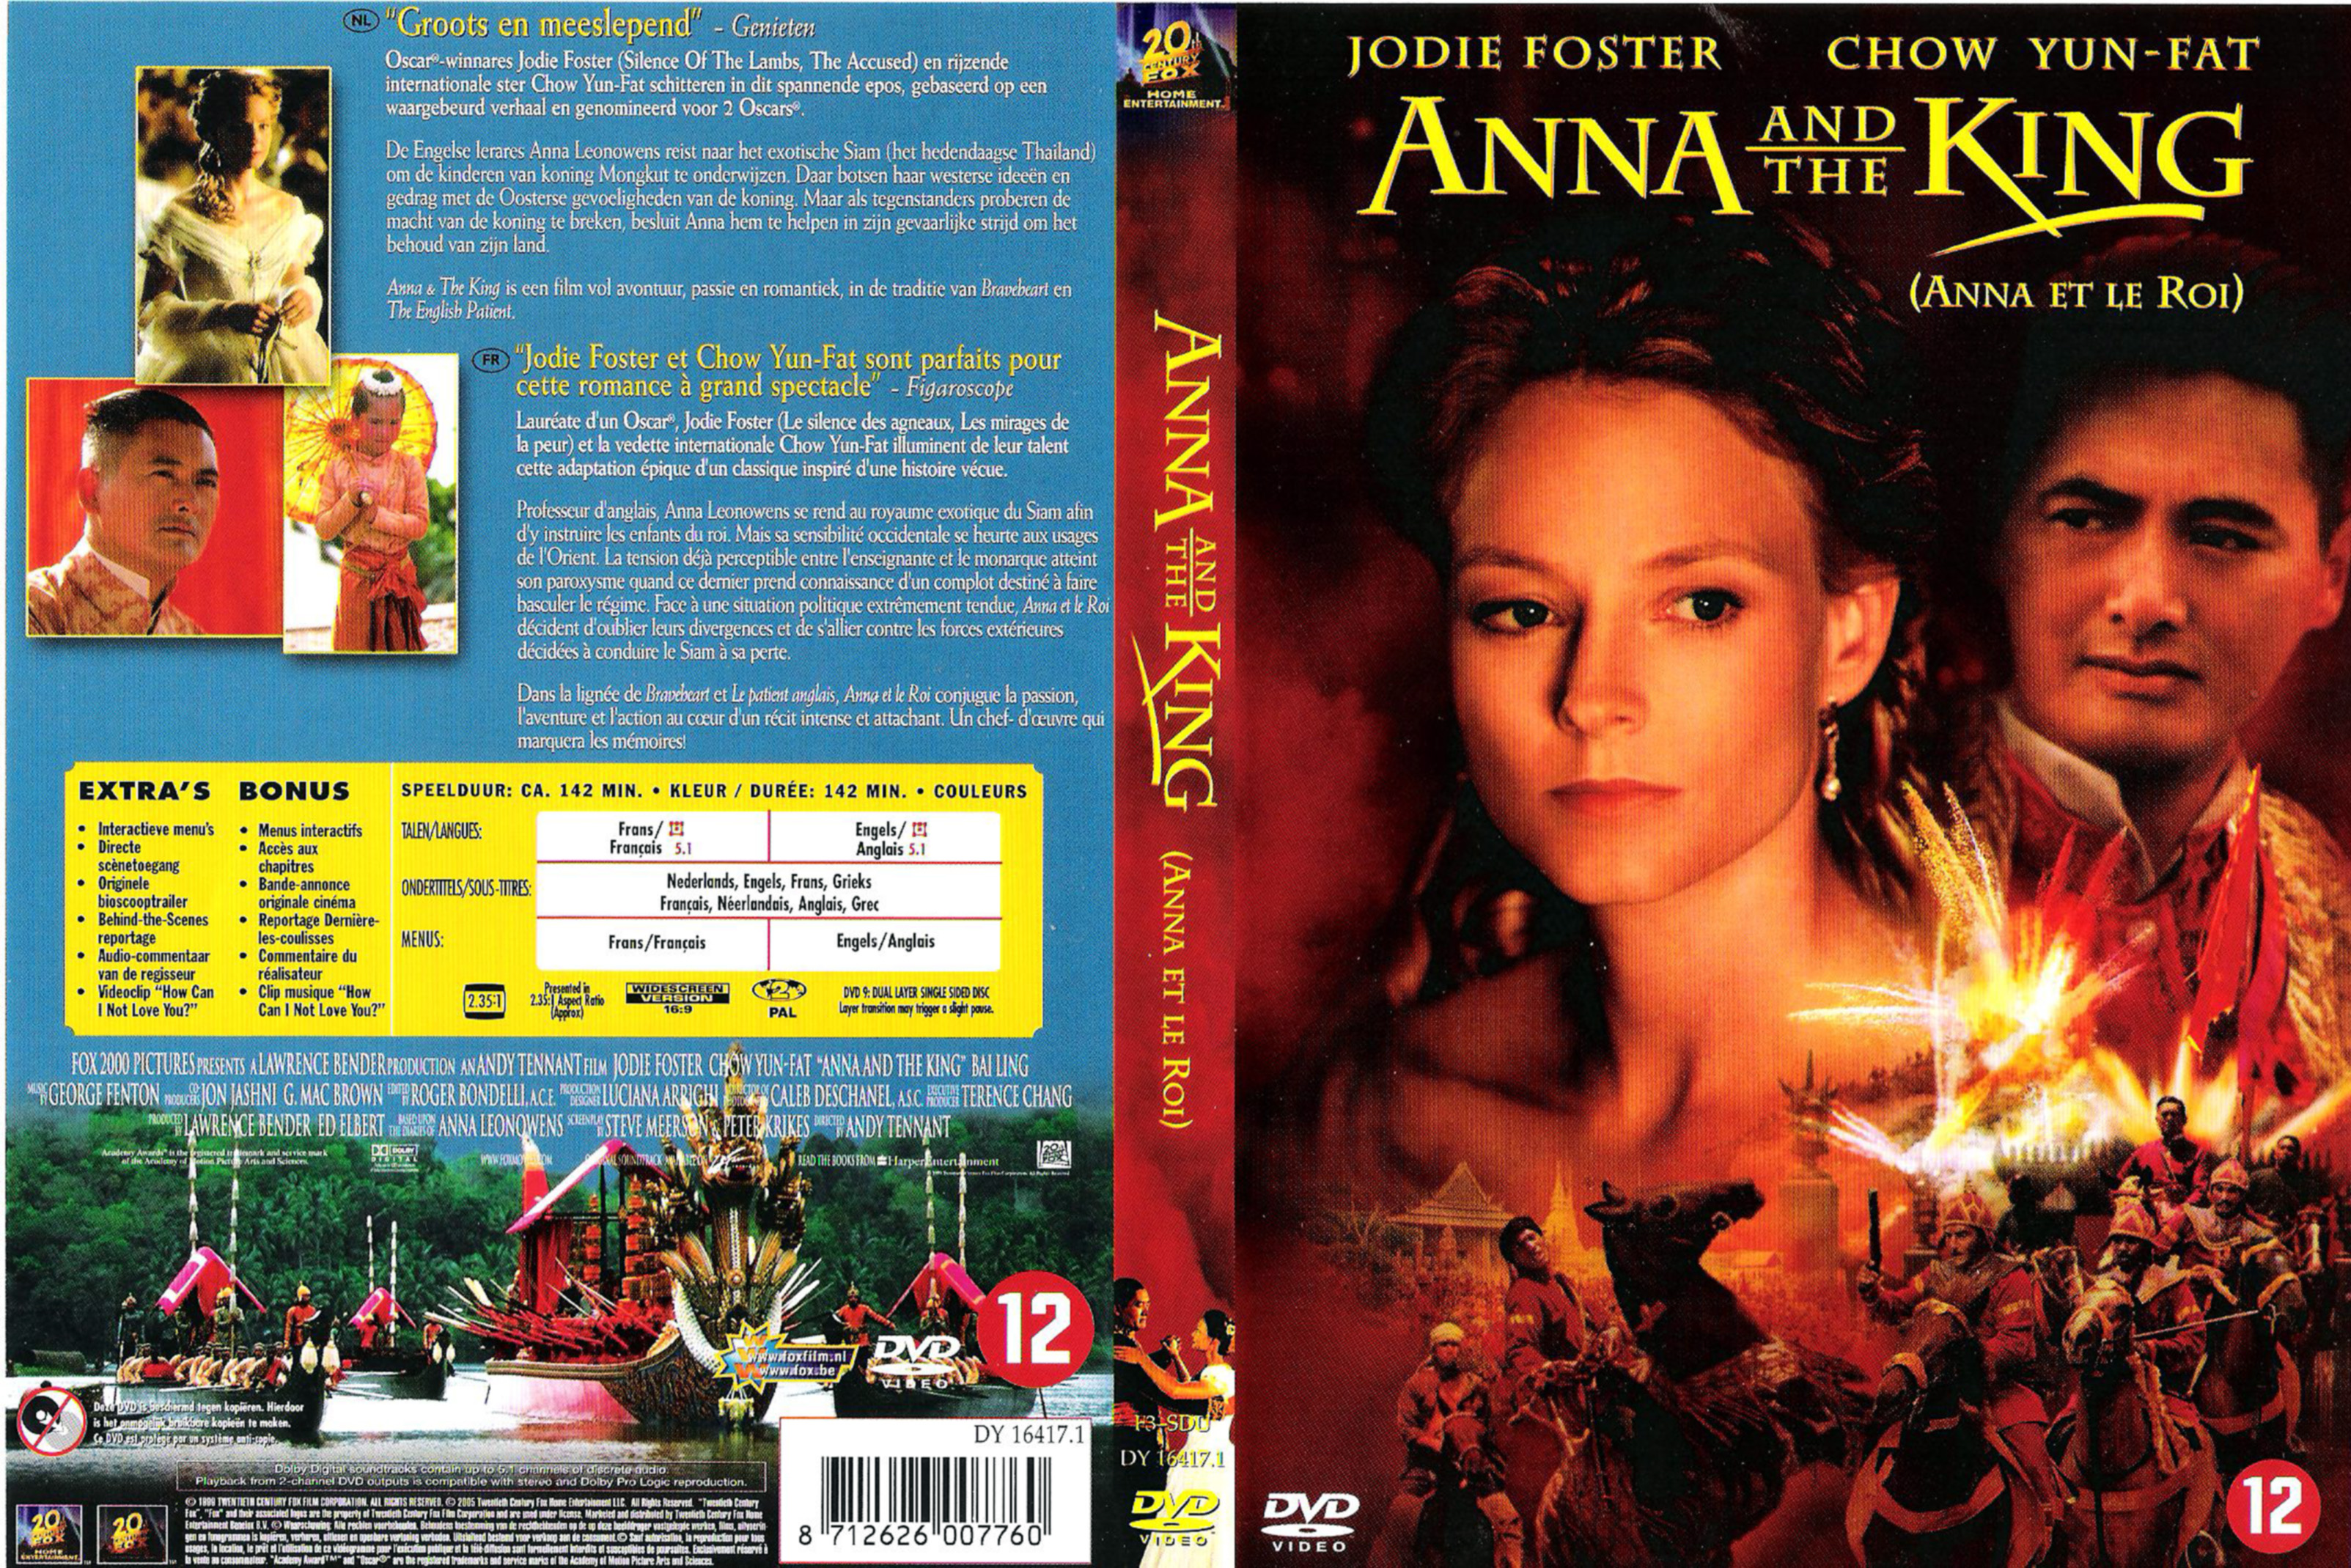 Jaquette DVD Anna et le roi v3